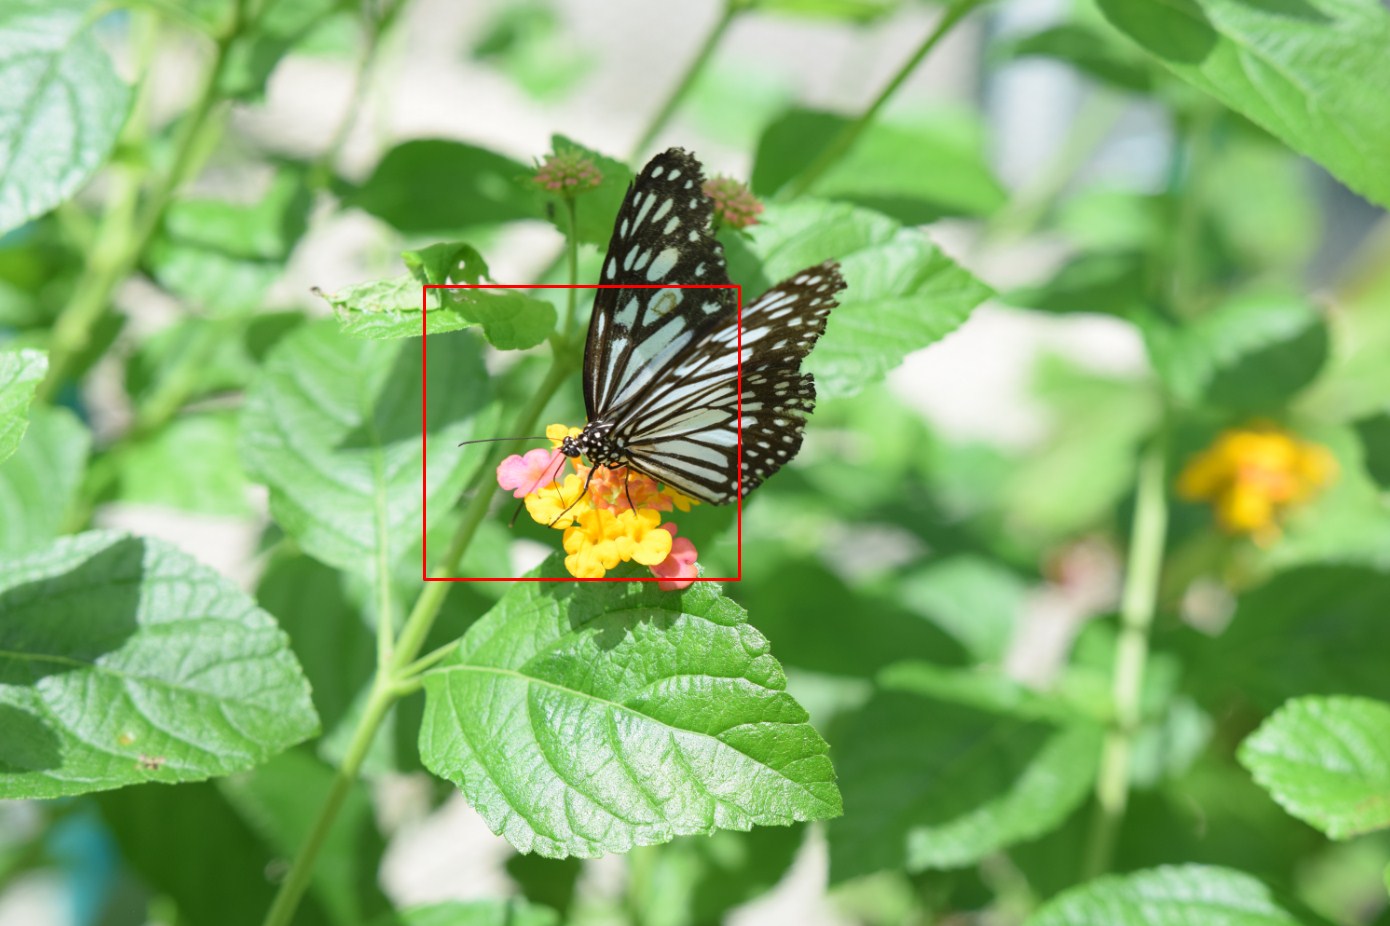 Sigma 18-35mm f/1.8 Art macro butterfly